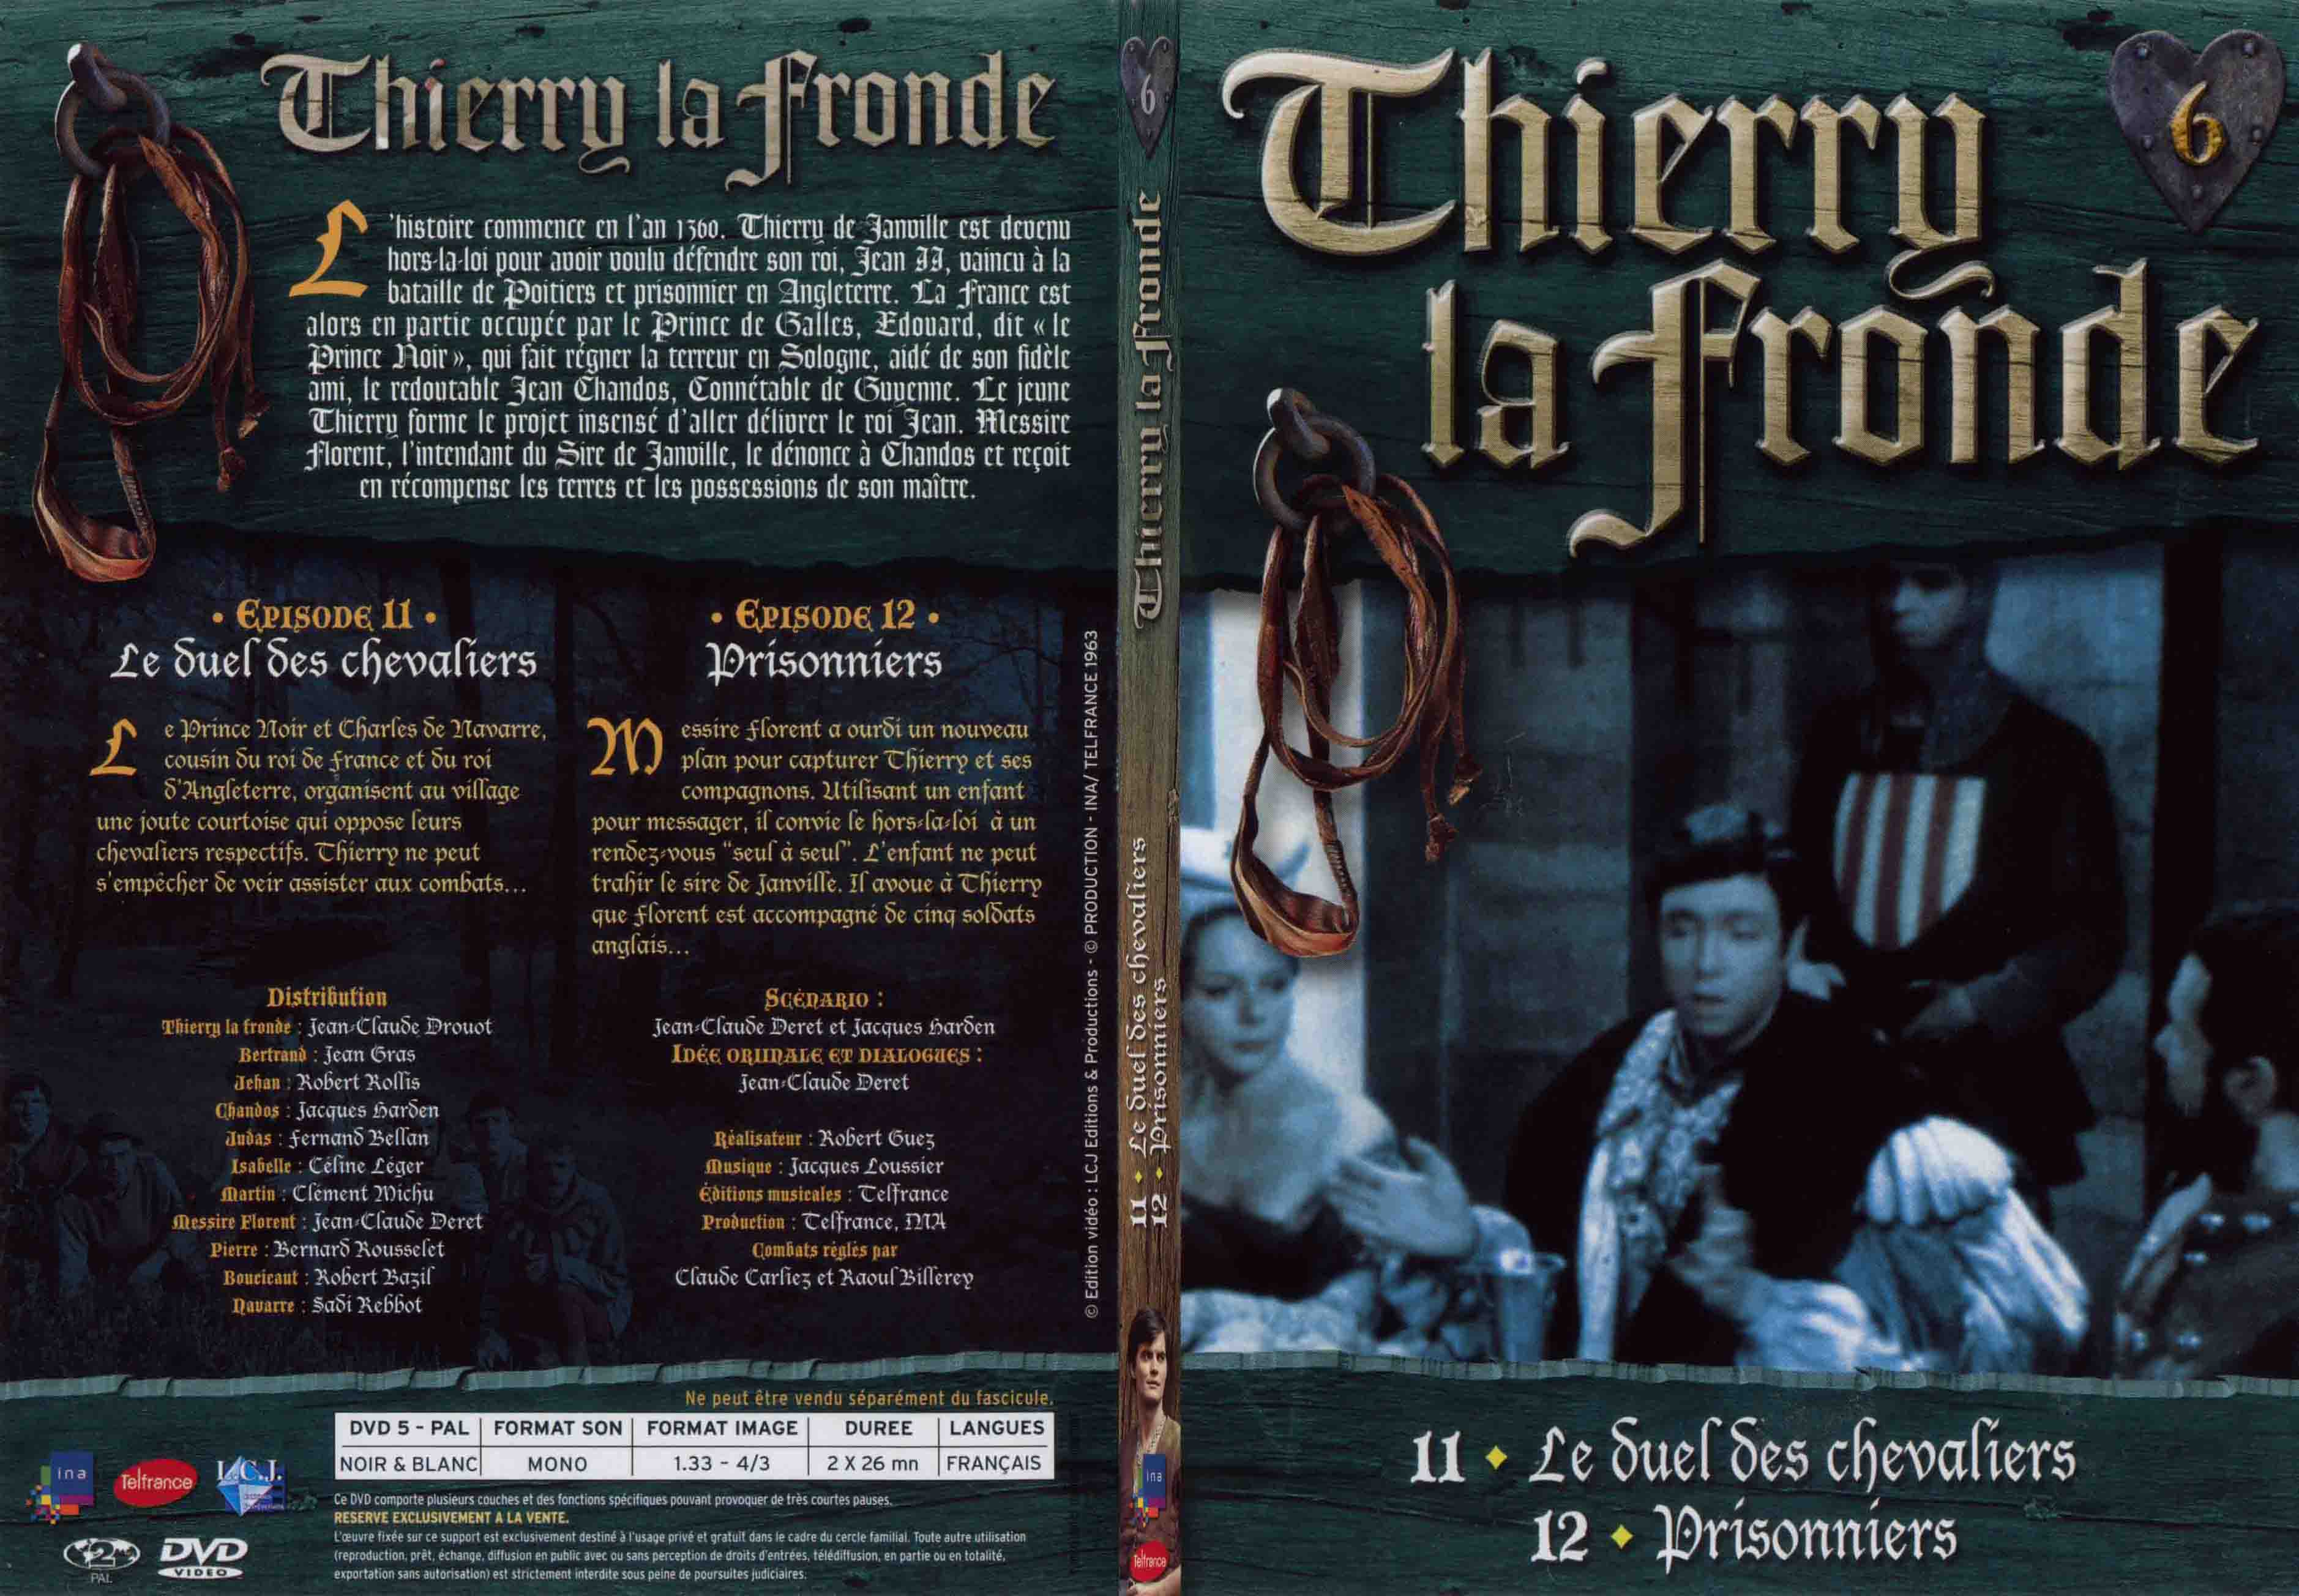 Jaquette DVD Thierry la Fronde vol 06 - SLIM